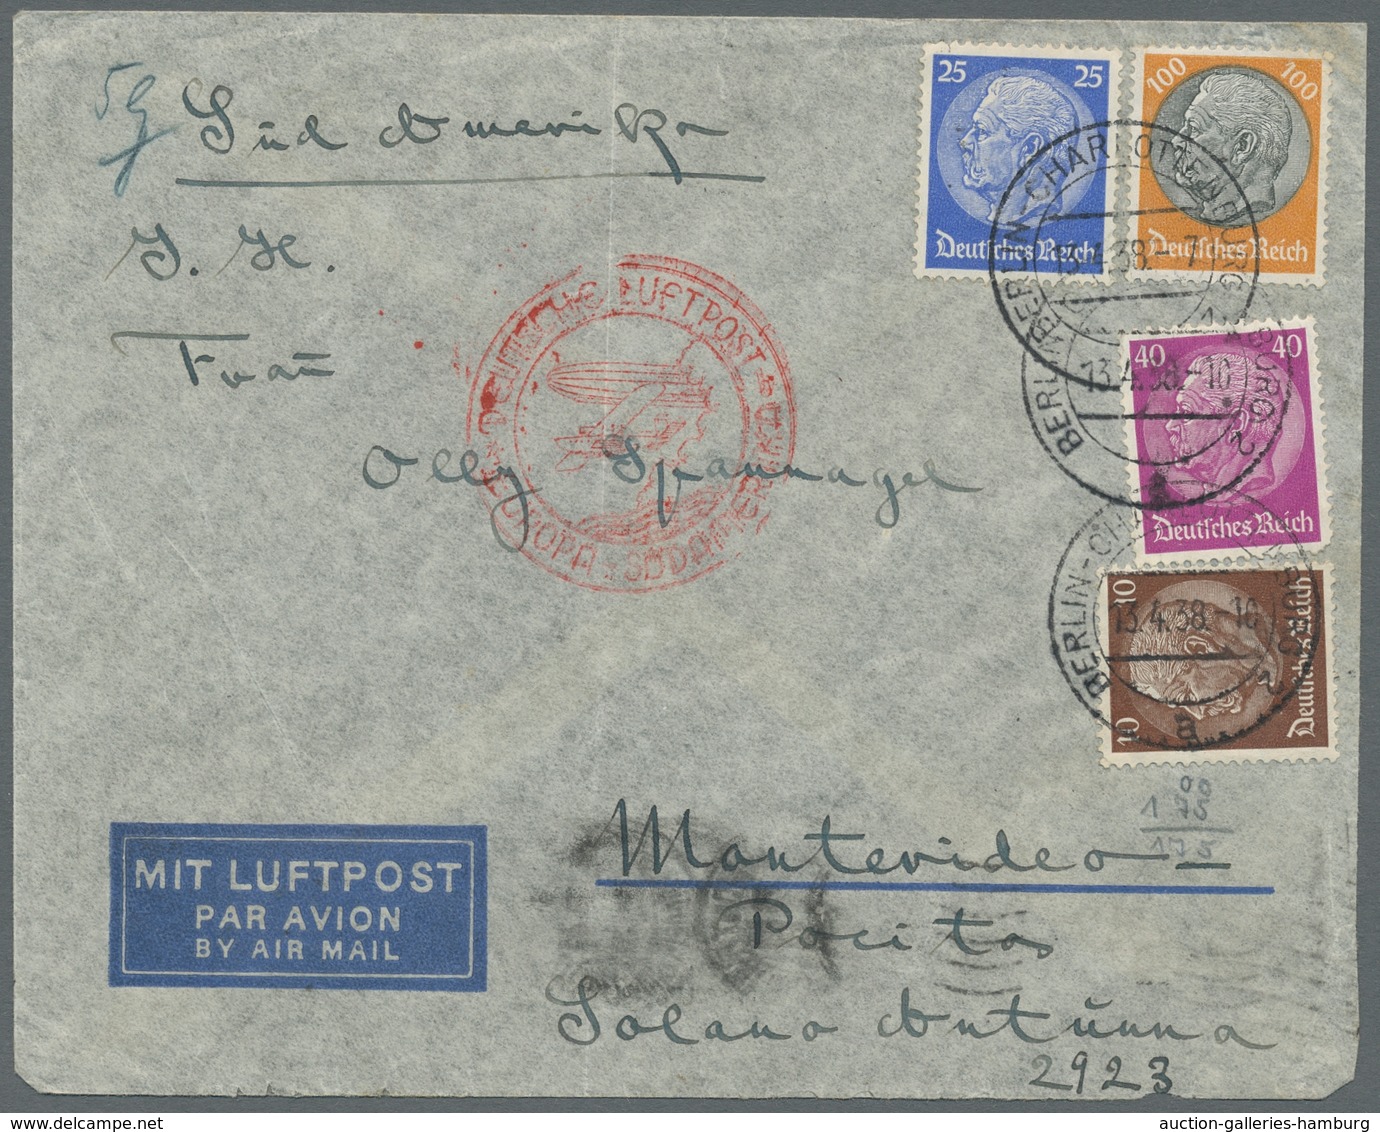 Deutsches Reich - 3. Reich: 1934-1938, Partie von 5 Luftpostbriefen welche alle nach Montevideo/Urug